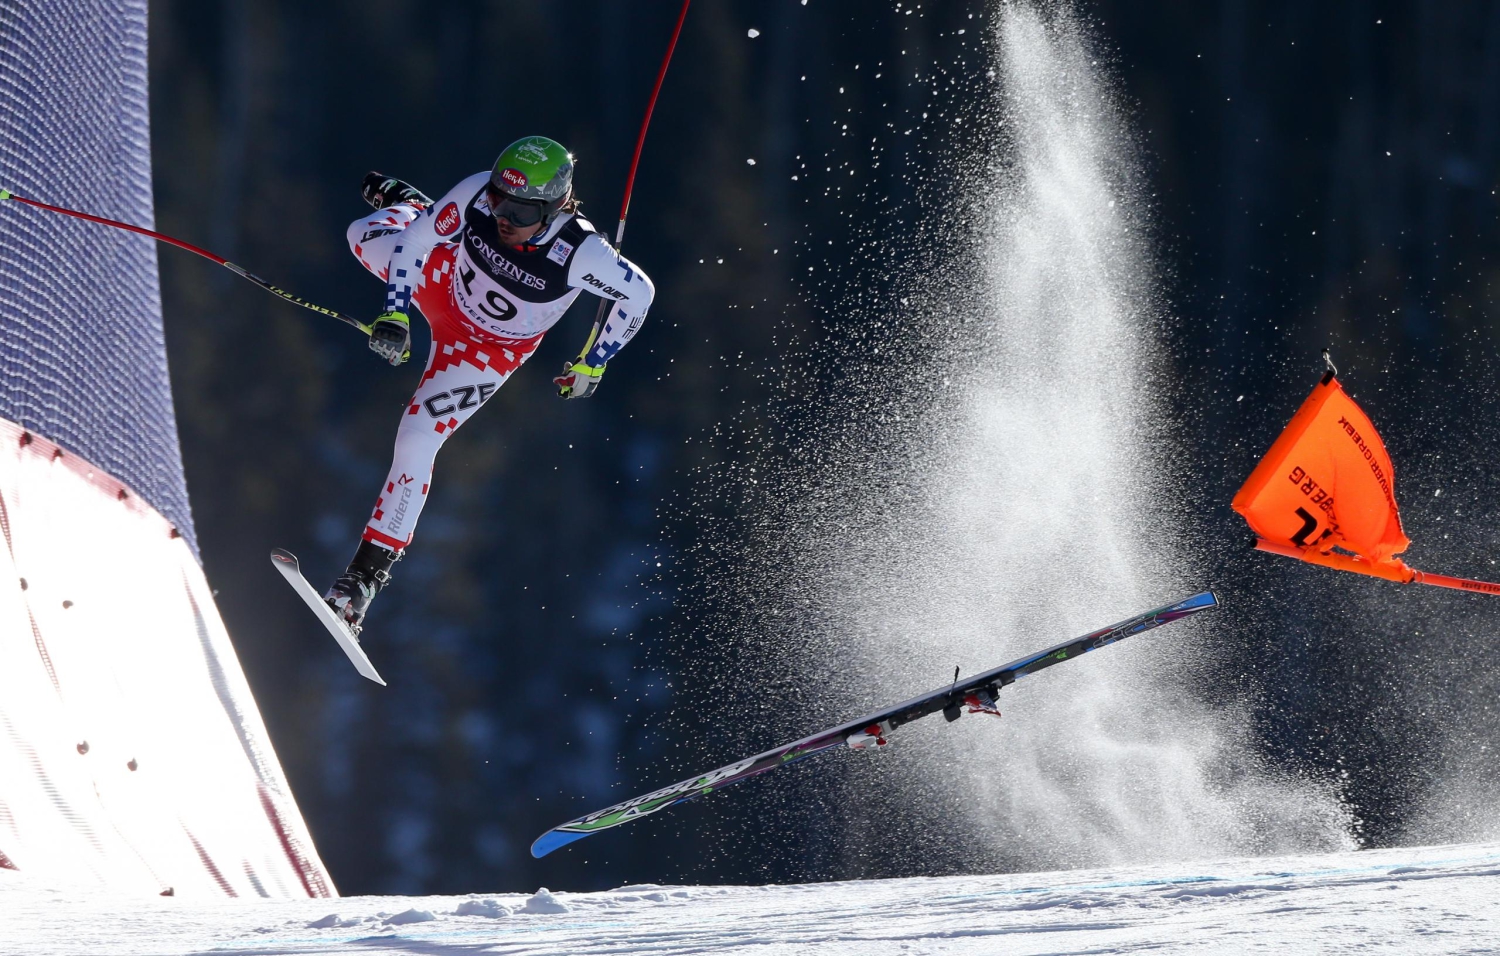 La caída de un esquiador, World Press Photo 2016 en 'Deportes'